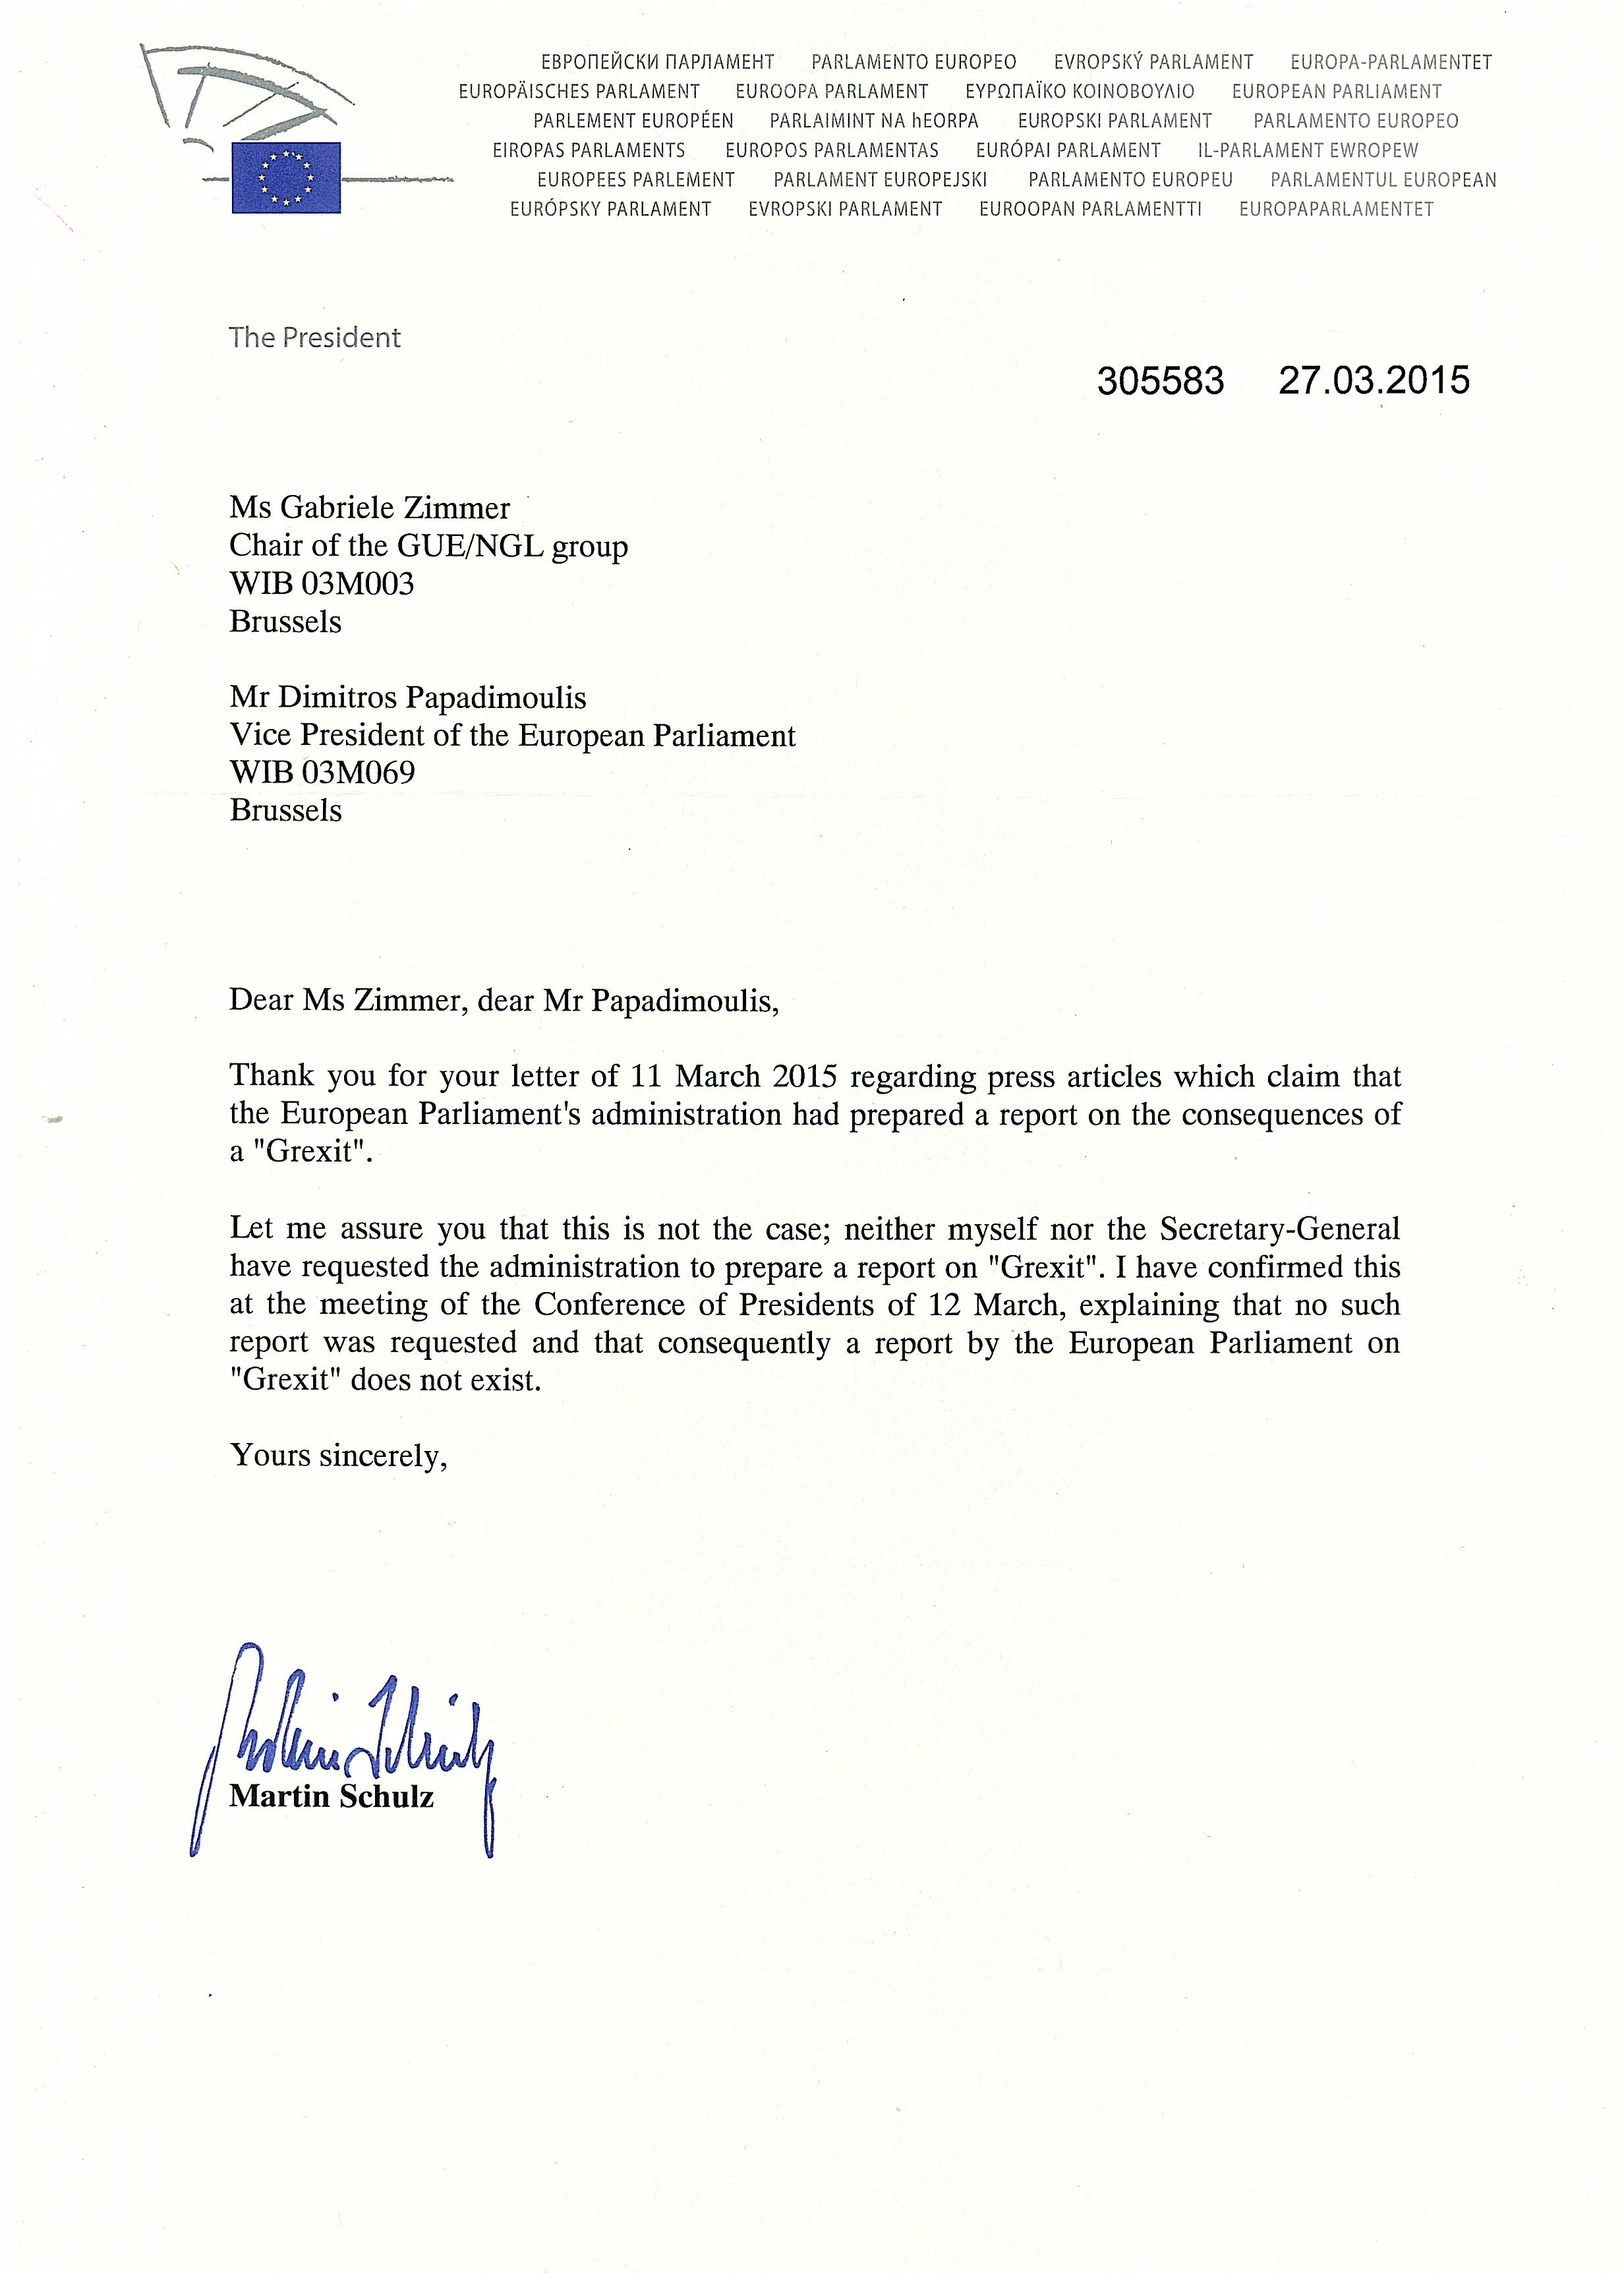 Κατηγορηματική διάψευση Μάρτιν Σουλτς: Δεν ζητήθηκε ποτέ, ούτε υφίσταται έκθεση του Ευρωκοινοβουλίου σχετικά με Grexit -  Απαντητική επιστολή του Προέδρου του ΕΚ προς Γκάμπι Τσίμερ και Δημήτρη Παπαδημούλη